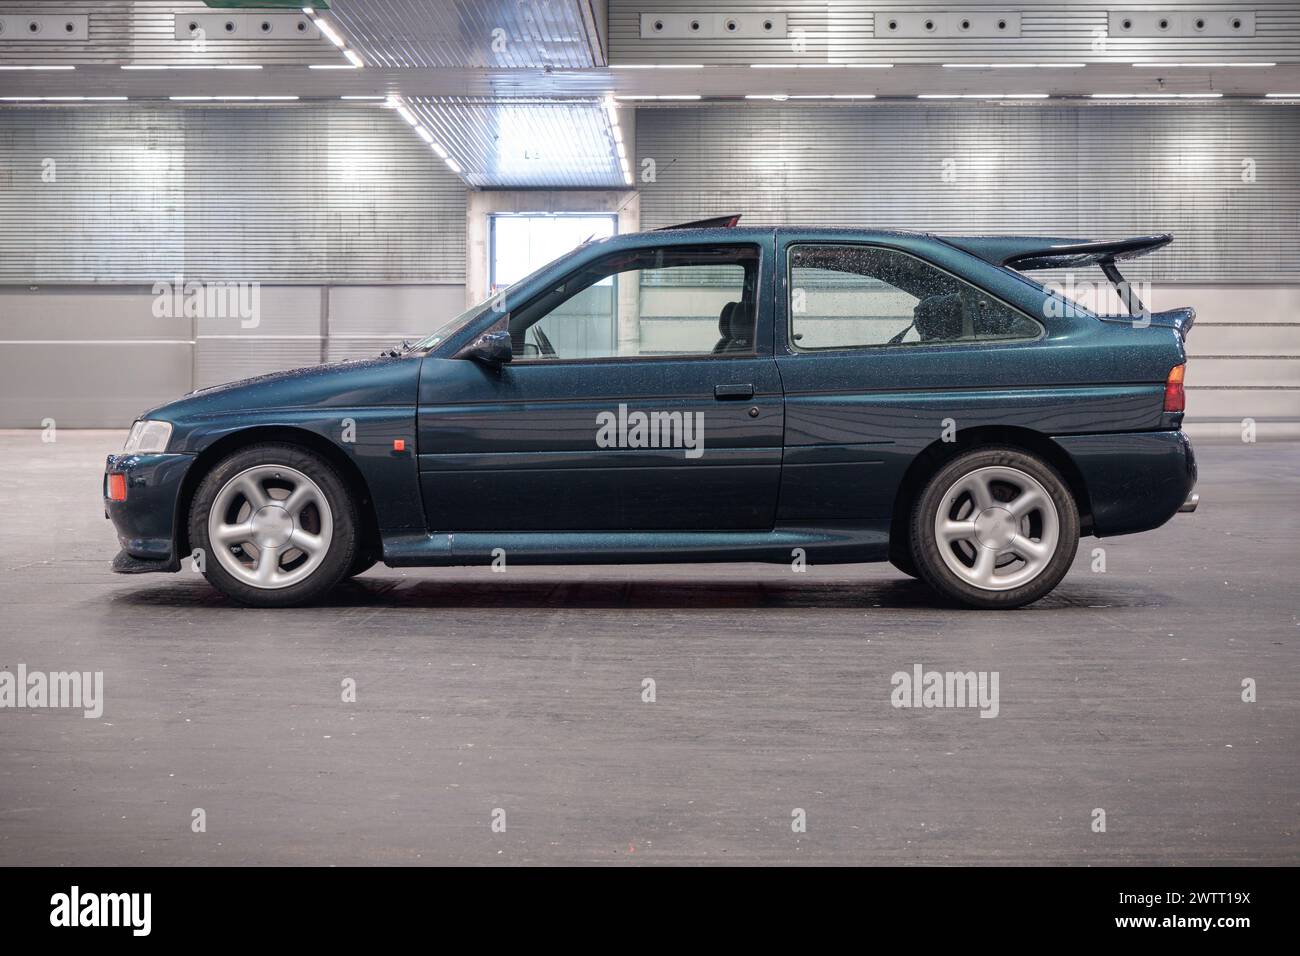 Bilbao, Espagne-11 novembre 2023 : Ford Escort RS Cosworth (vue latérale) dans un parking intérieur Banque D'Images